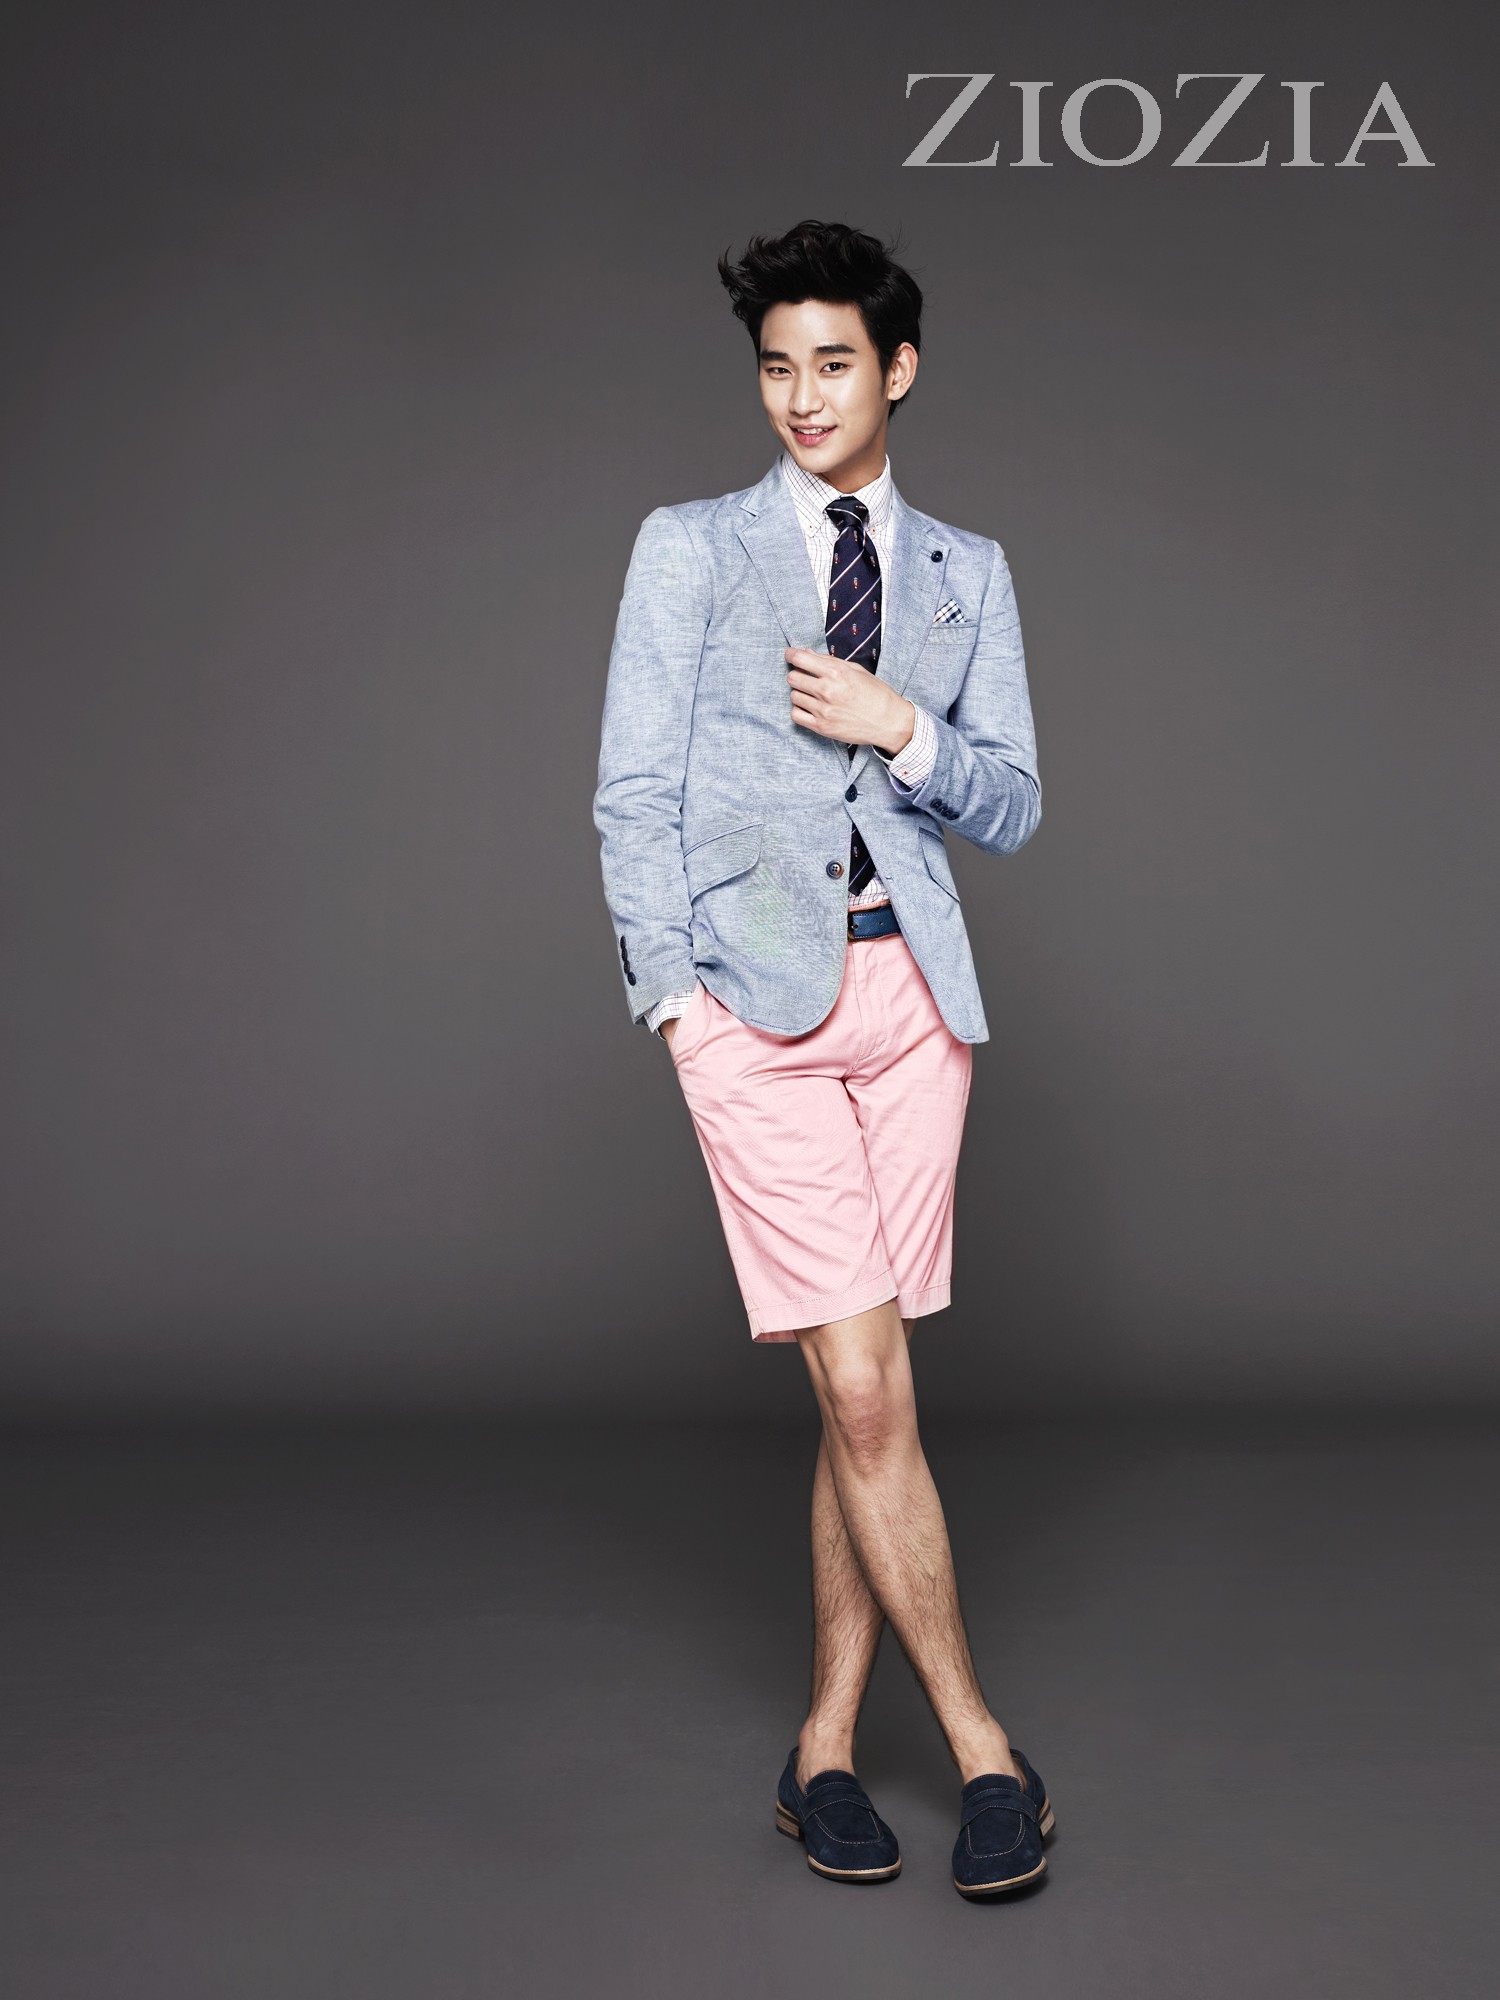 金秀贤 ziozia广告 2012,秀贤从2012年开始代言韩国顶级男装品牌,今年